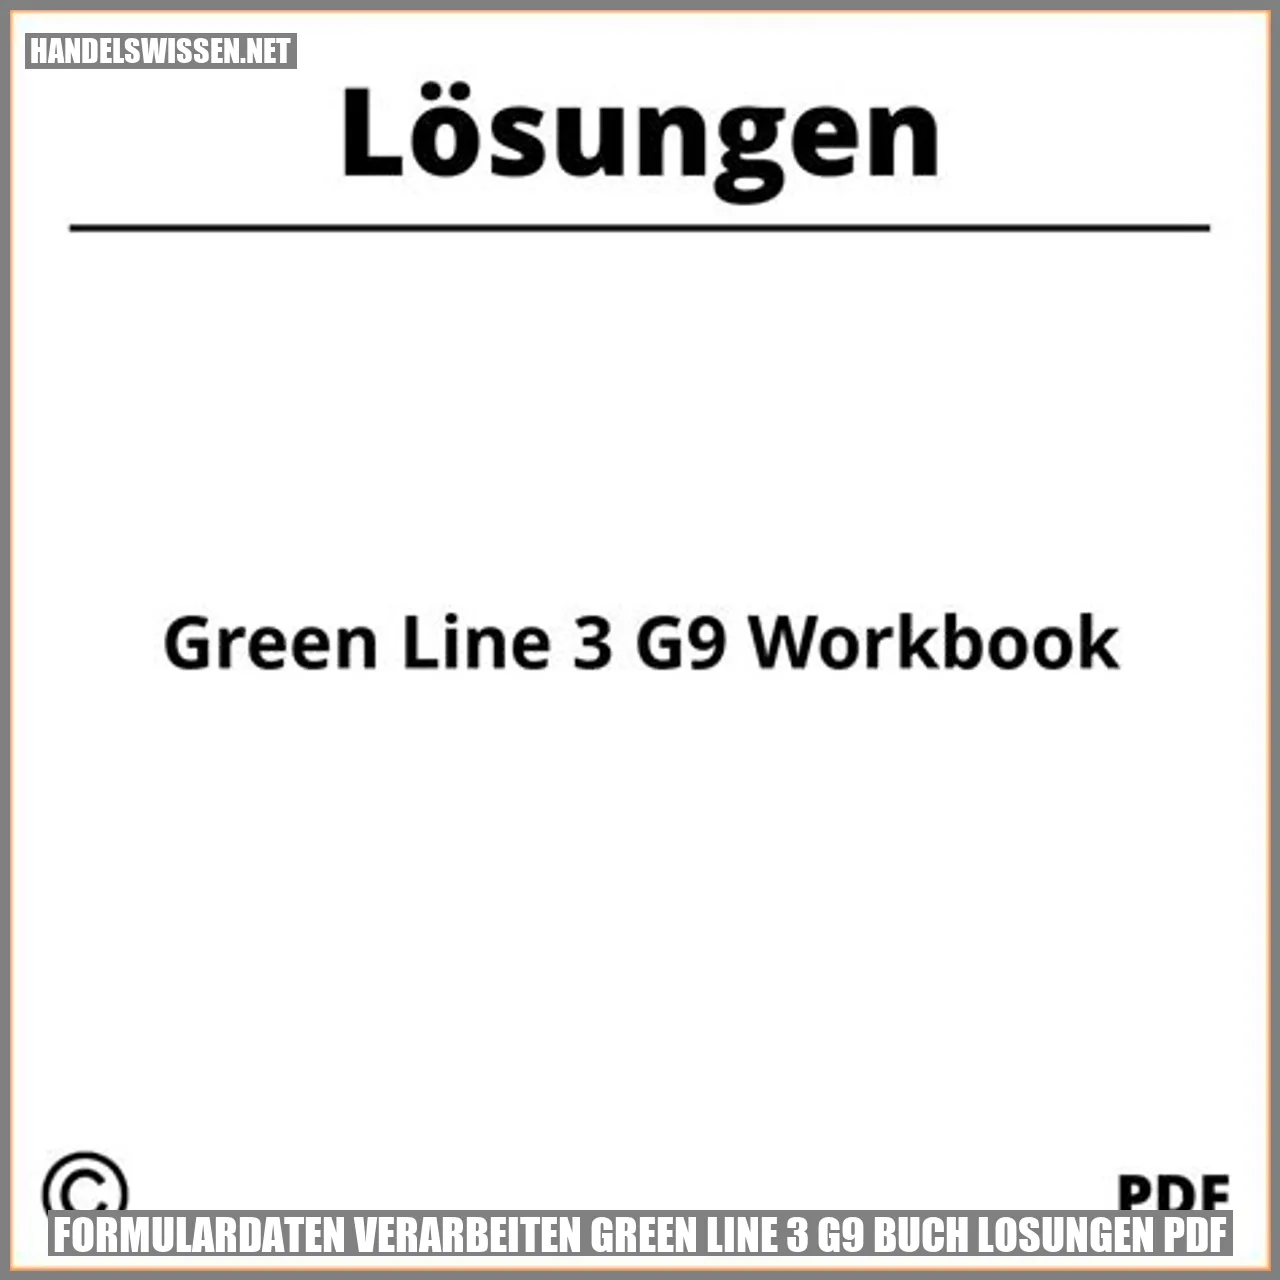 Formulardaten verarbeiten green line 3 g9 buch losungen pdf